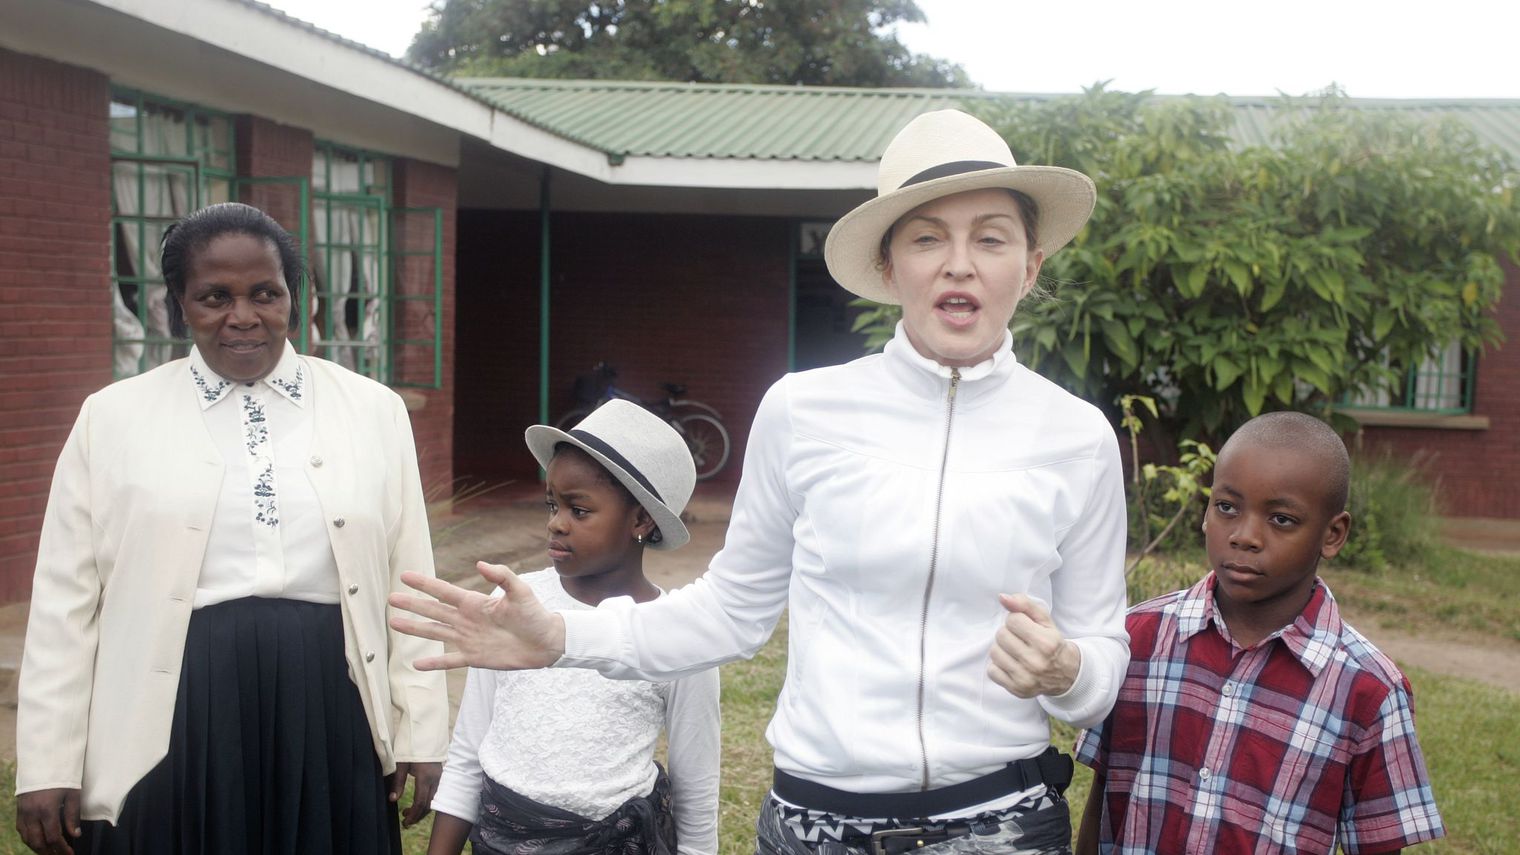 La chanteuse américaine Madonna entourée par ses enfants David (d) et Mercy, le 5 avril 2013 à Namitete au Malawi afp.com - AMOS GUMULIRA